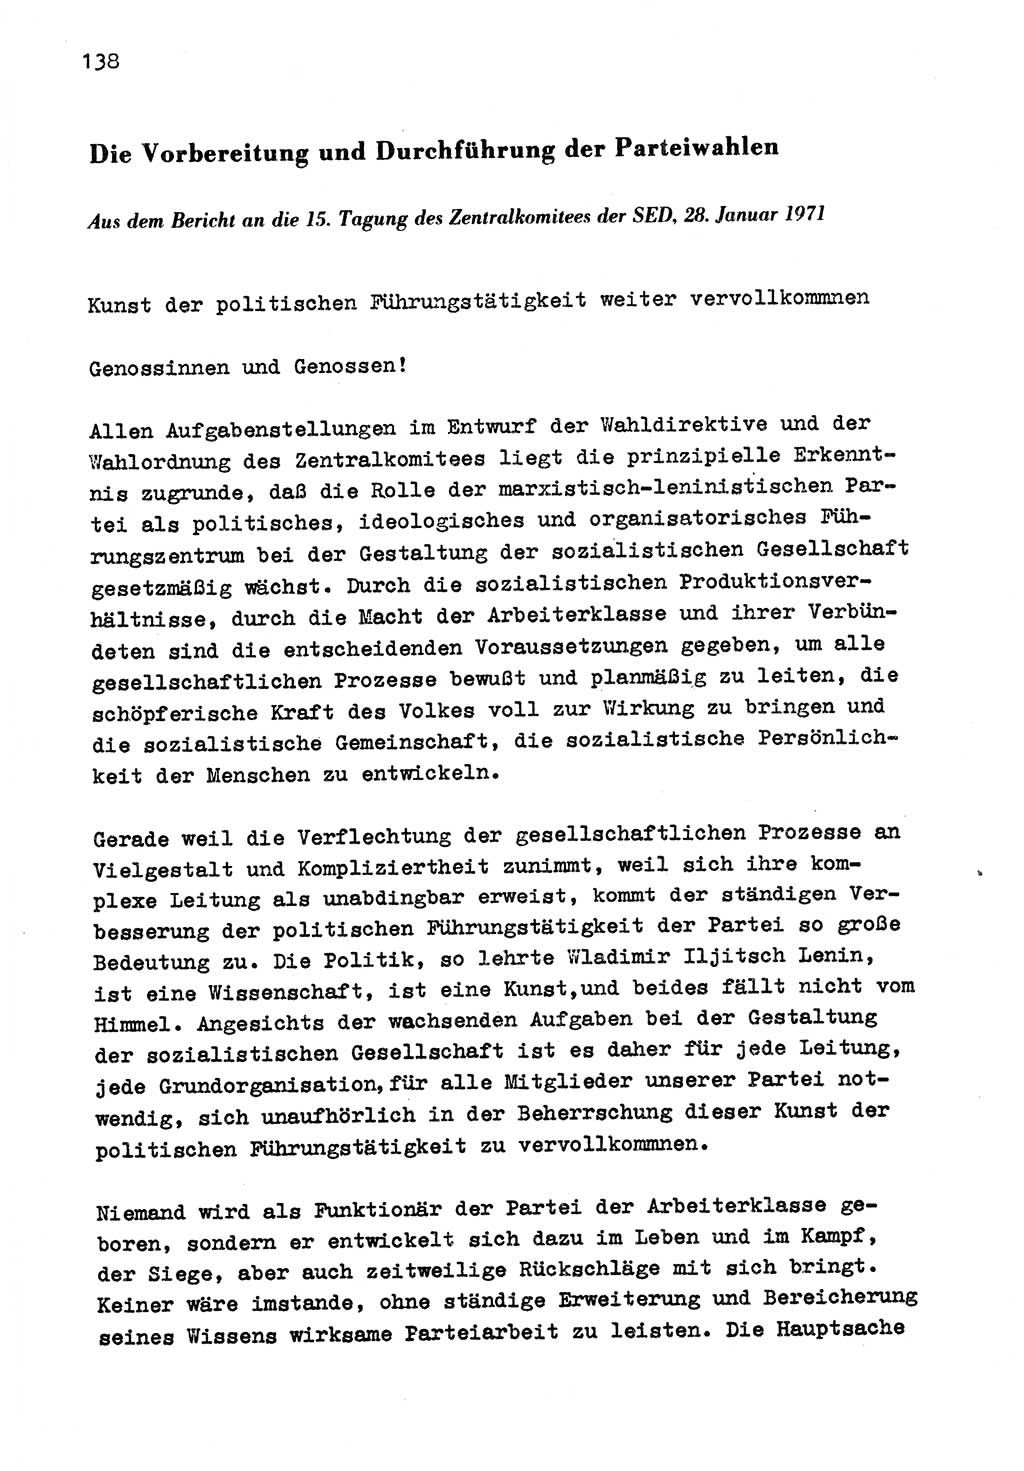 Zu Fragen der Parteiarbeit [Sozialistische Einheitspartei Deutschlands (SED) Deutsche Demokratische Republik (DDR)] 1979, Seite 138 (Fr. PA SED DDR 1979, S. 138)